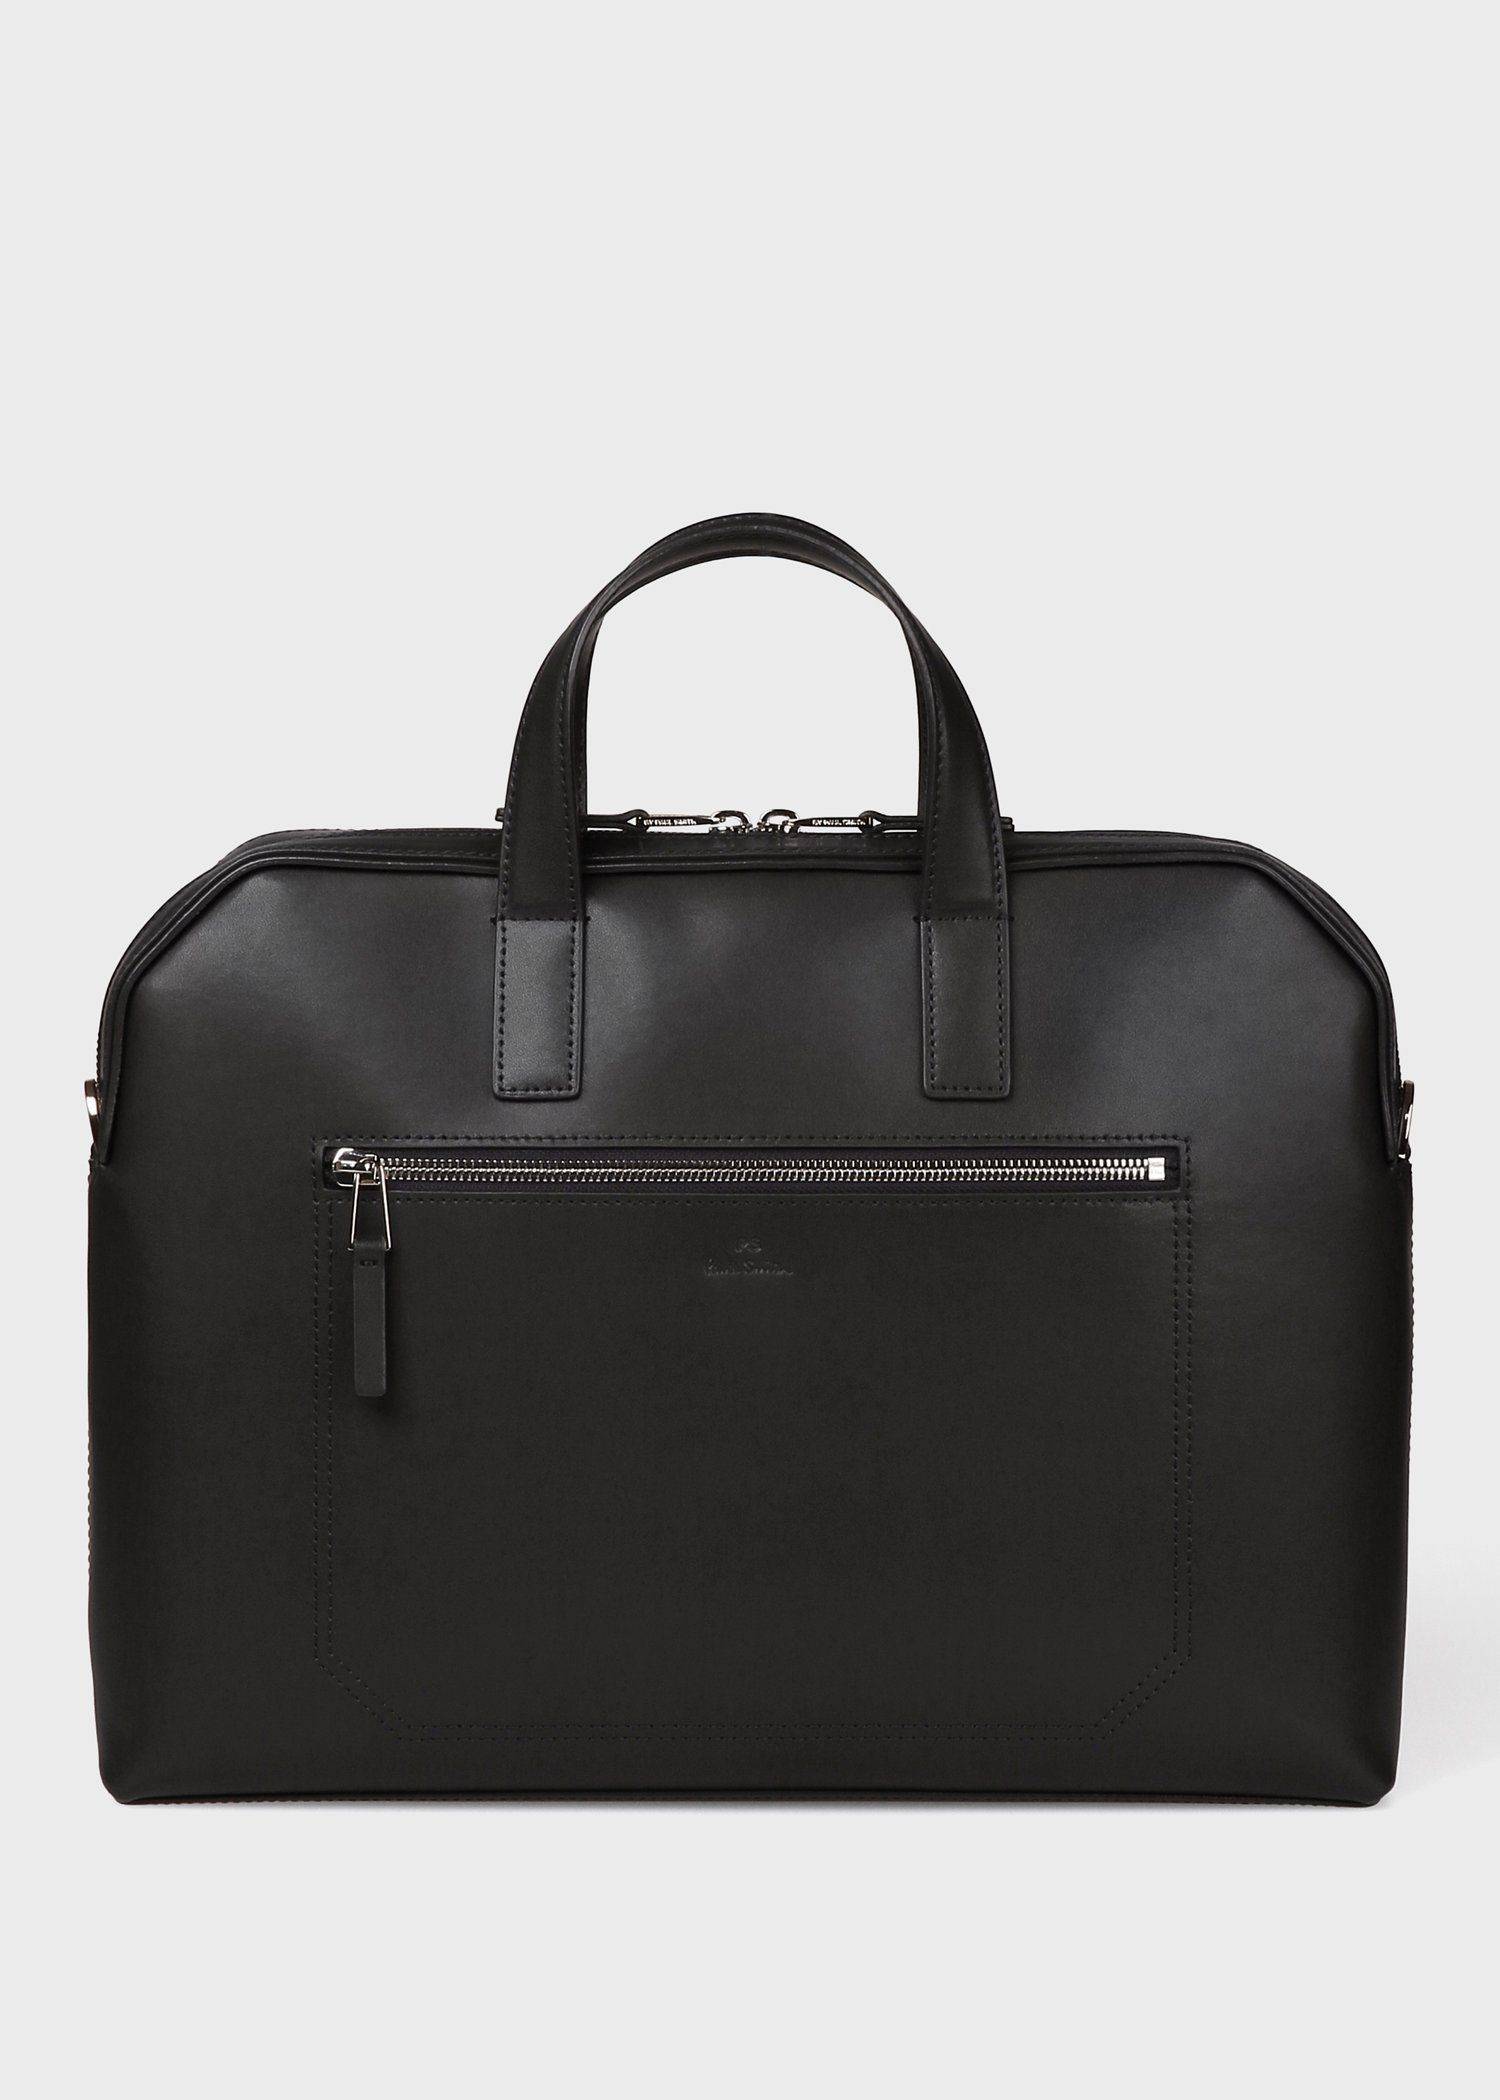 5,400円【極美品】ポールスミス 2way ビジネスバッグ ブリーフケース 黒 保存袋